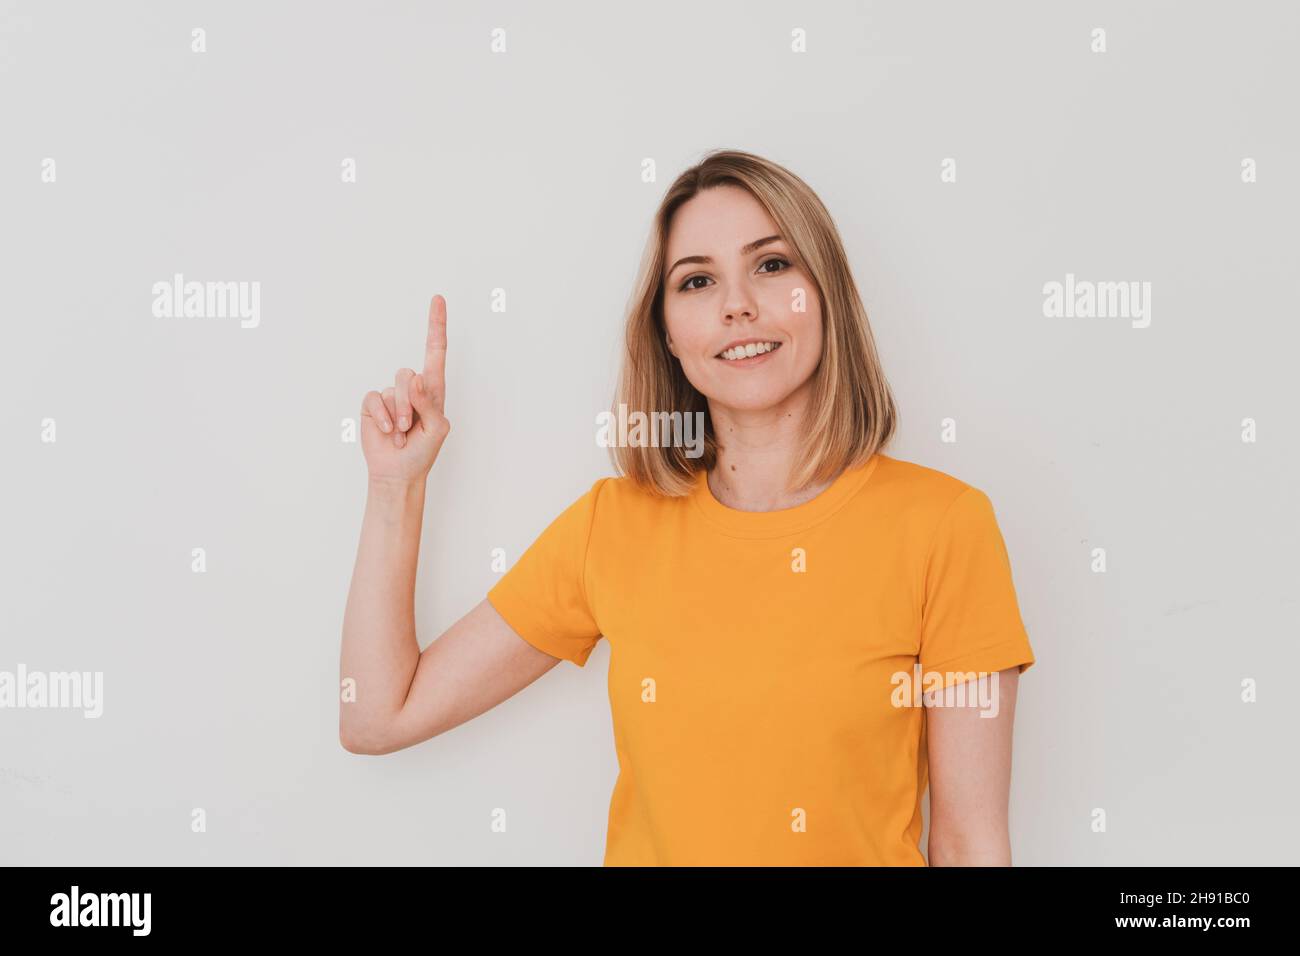 Portrait de la jeune femme en t-shirt jaune pointant son doigt vers le haut.Sur fond blanc.Mouvements de la main Banque D'Images